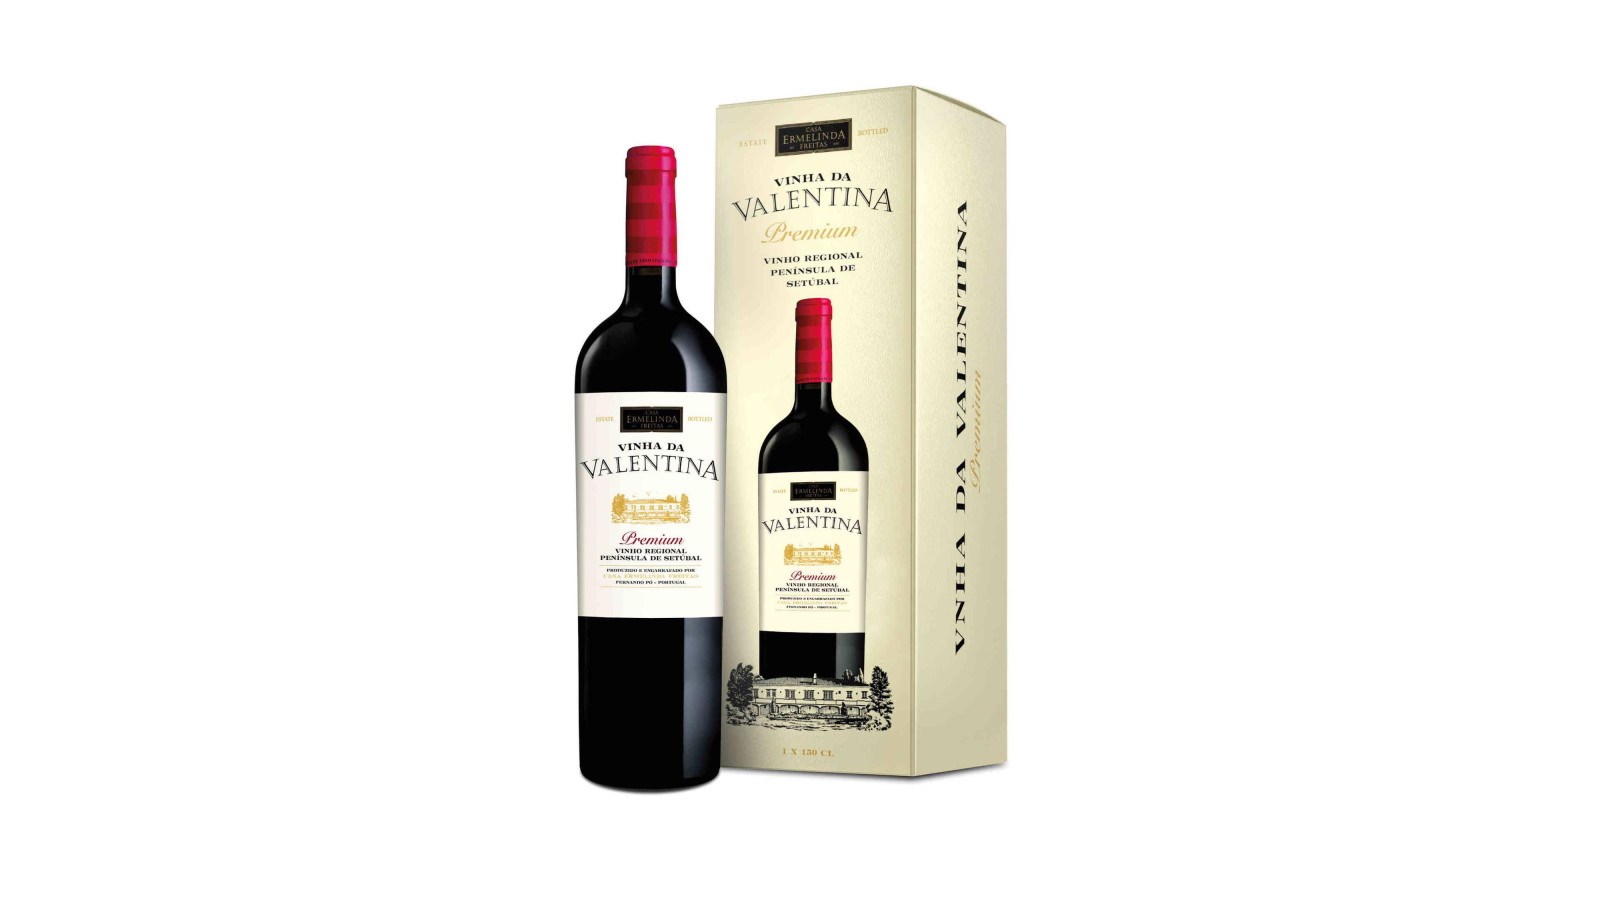 Magnum Vinha da Valentina Premium Regional Península de Setúbal Tinto 1,5l